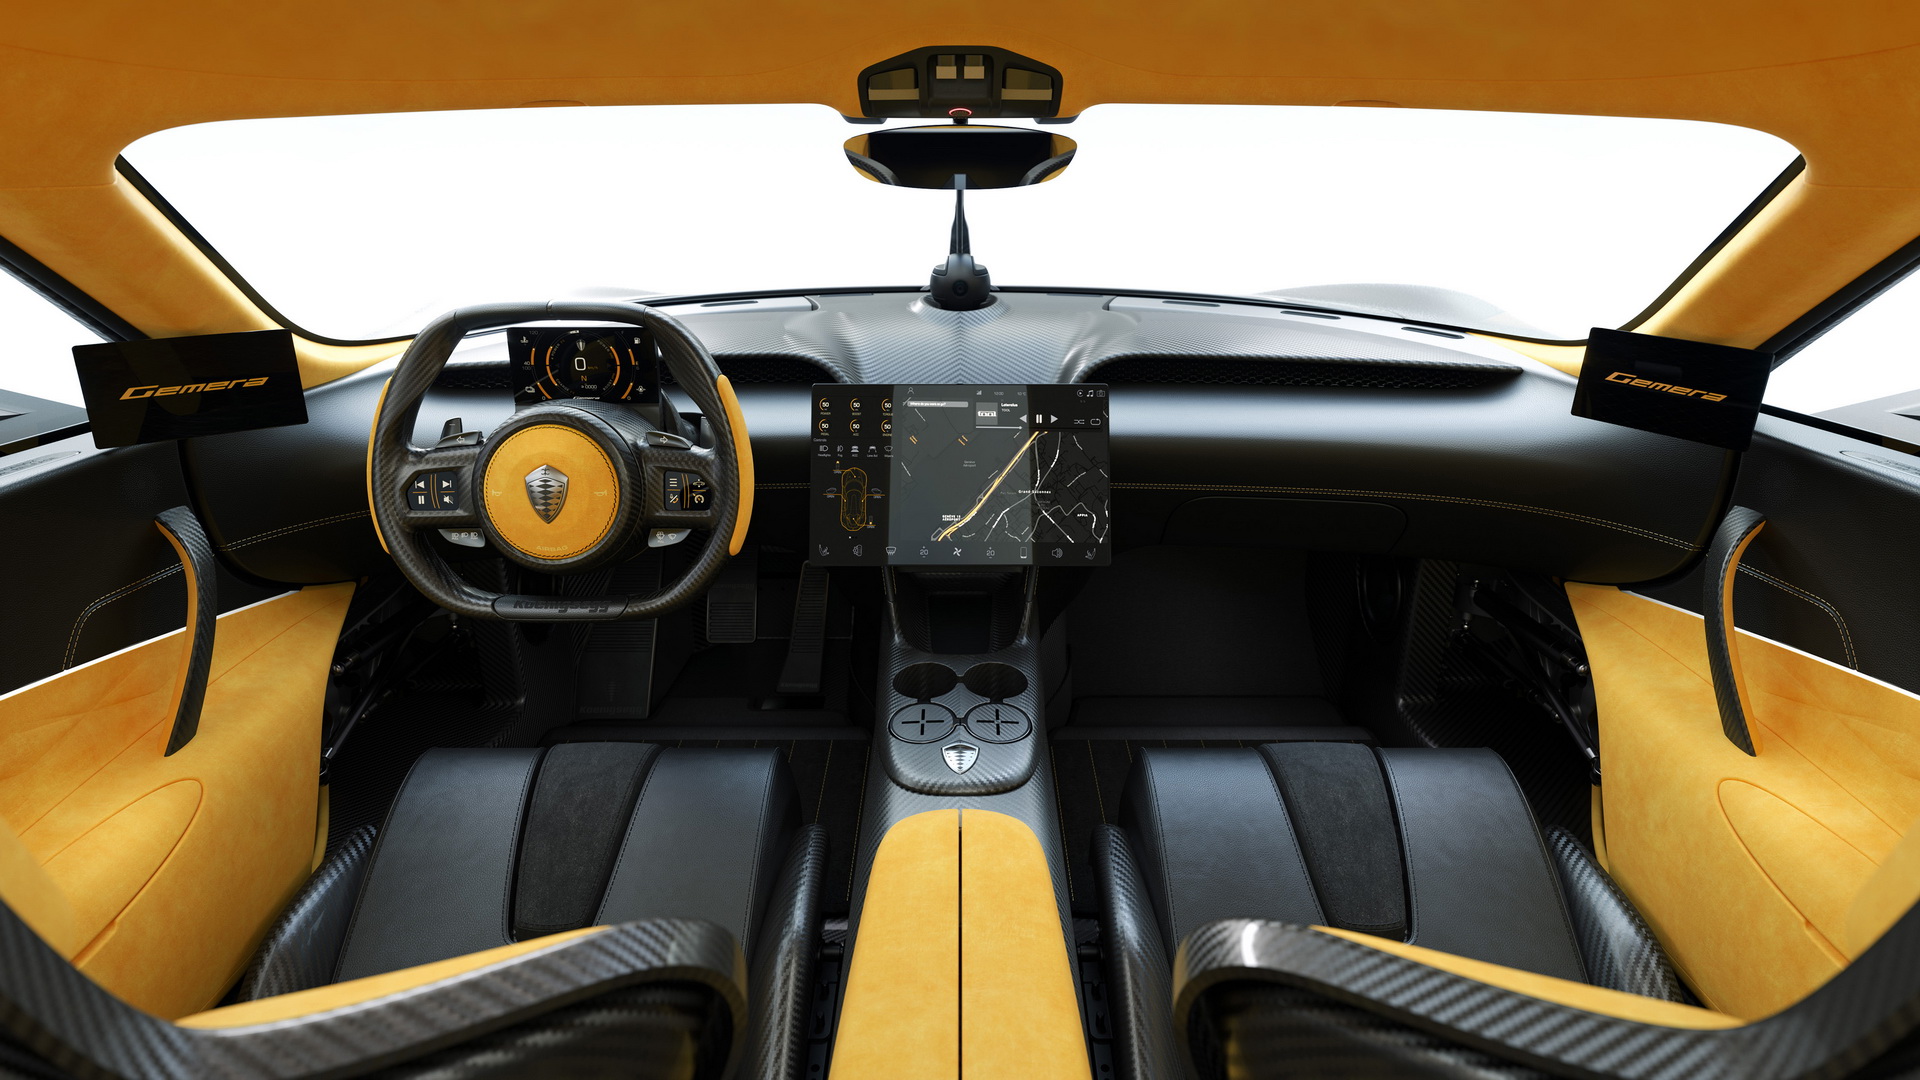 Rộ tin người Việt mua Koenigsegg Gemera: Siêu xe trăm tỷ chung nguồn gốc với Pagani Huayra của Minh nhựa và McLaren Senna của Hoàng Kim Khánh - Ảnh 4.